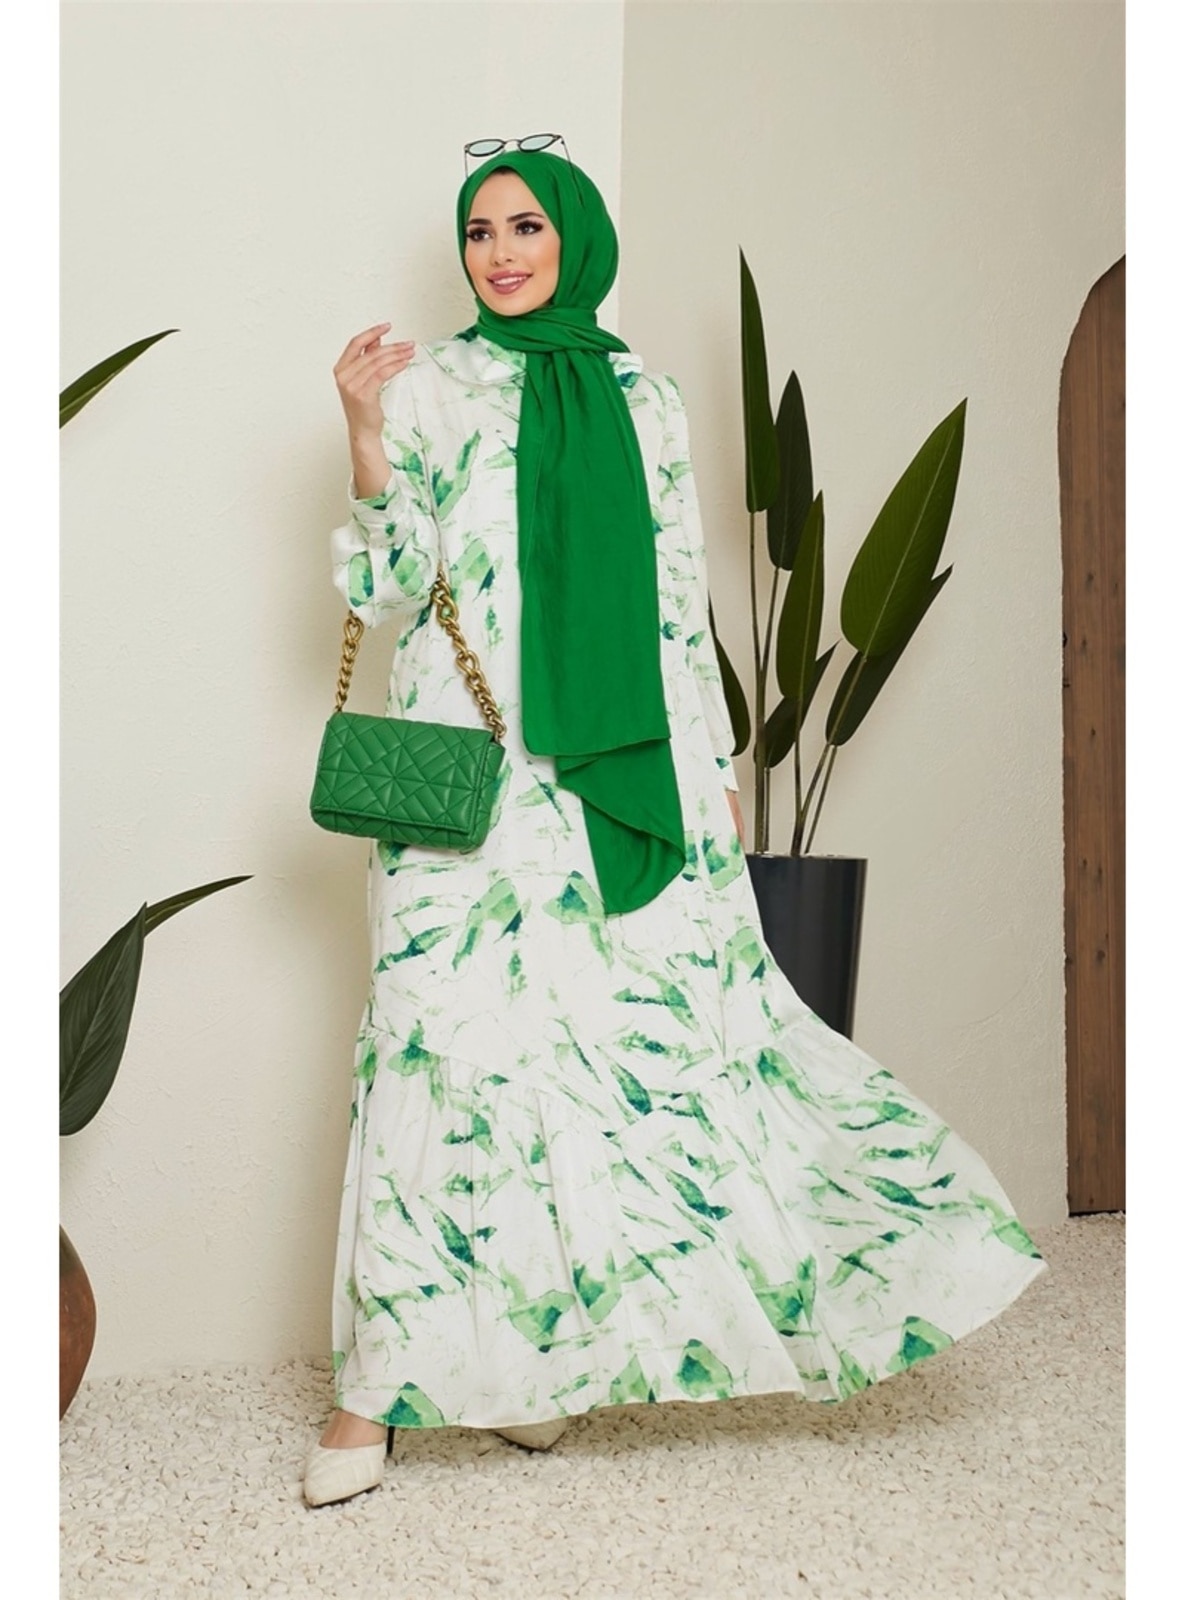  Green Modest Dress